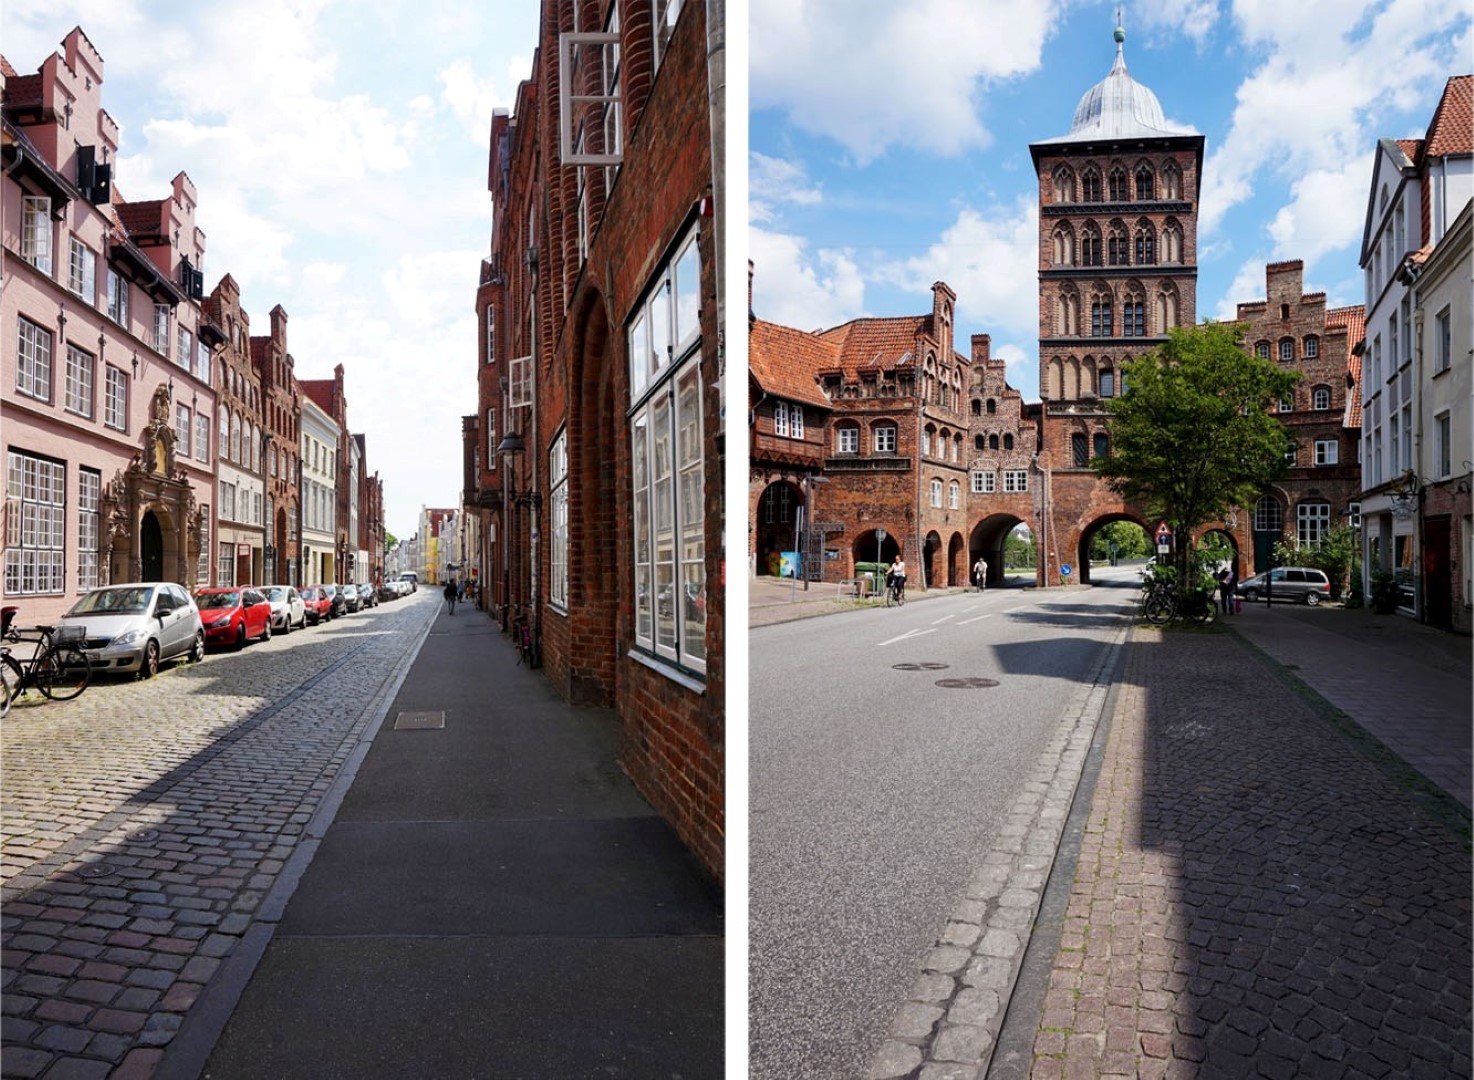 Un jour à Lübeck- City Guide - Blog voyage